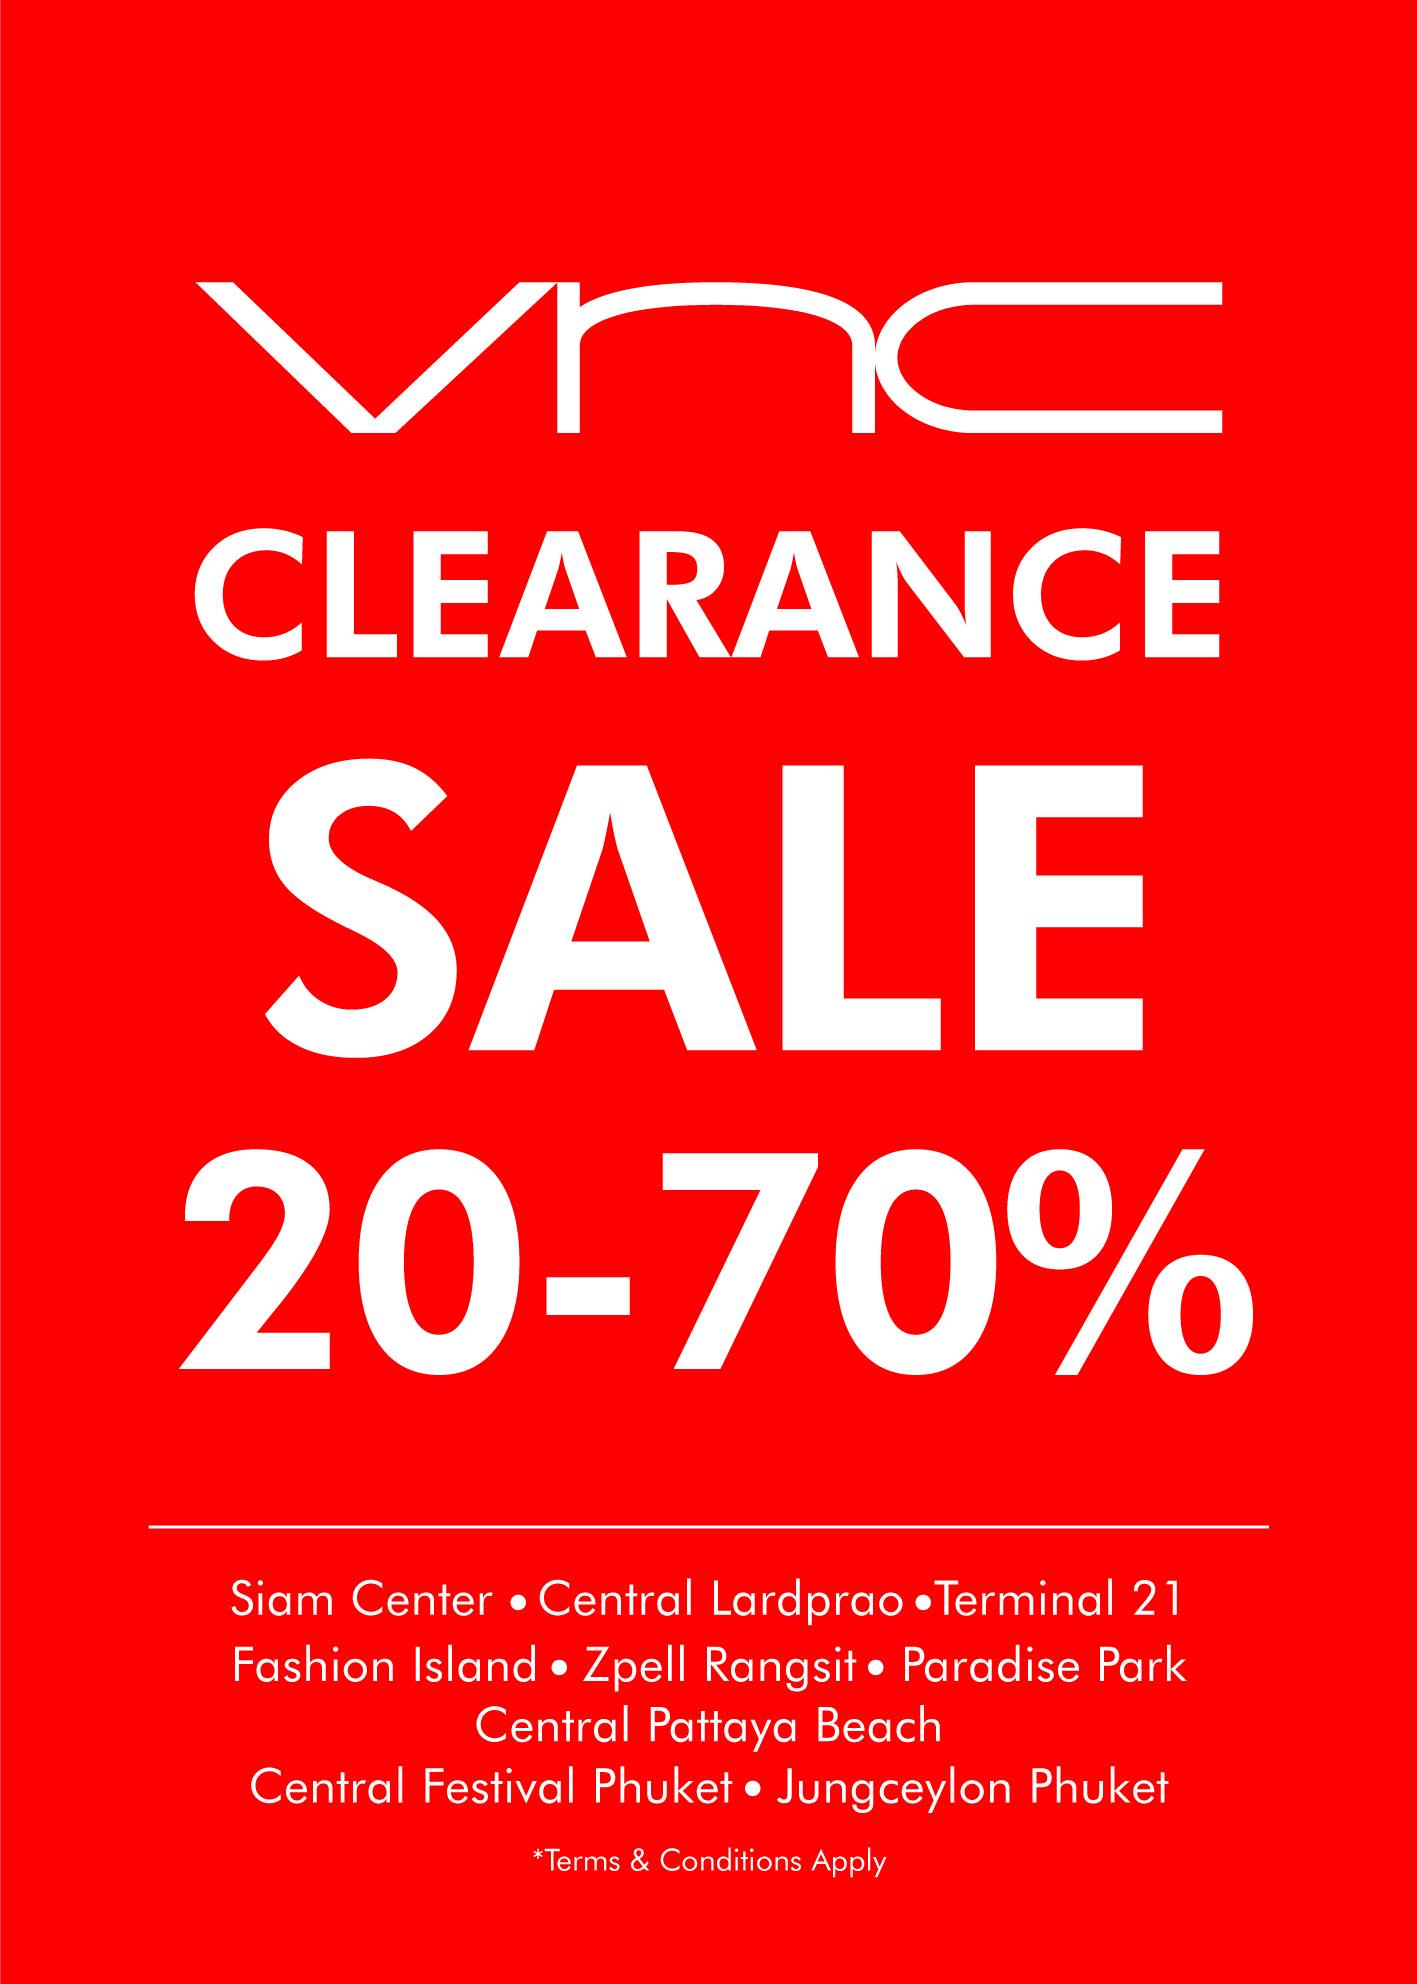 VNC Clearance Sale